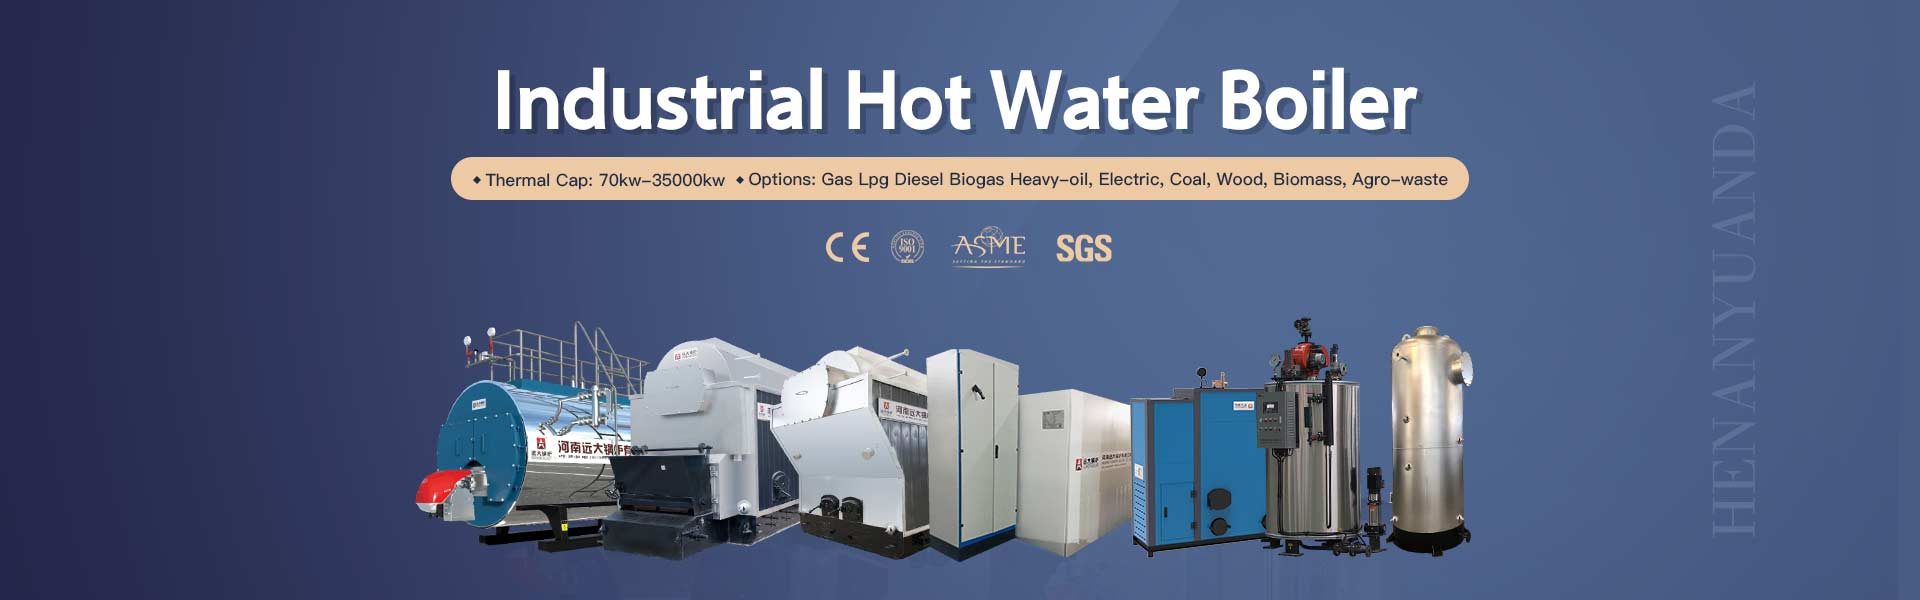 industrial hot water boiler,yuanda boiler,industrial hot water generator